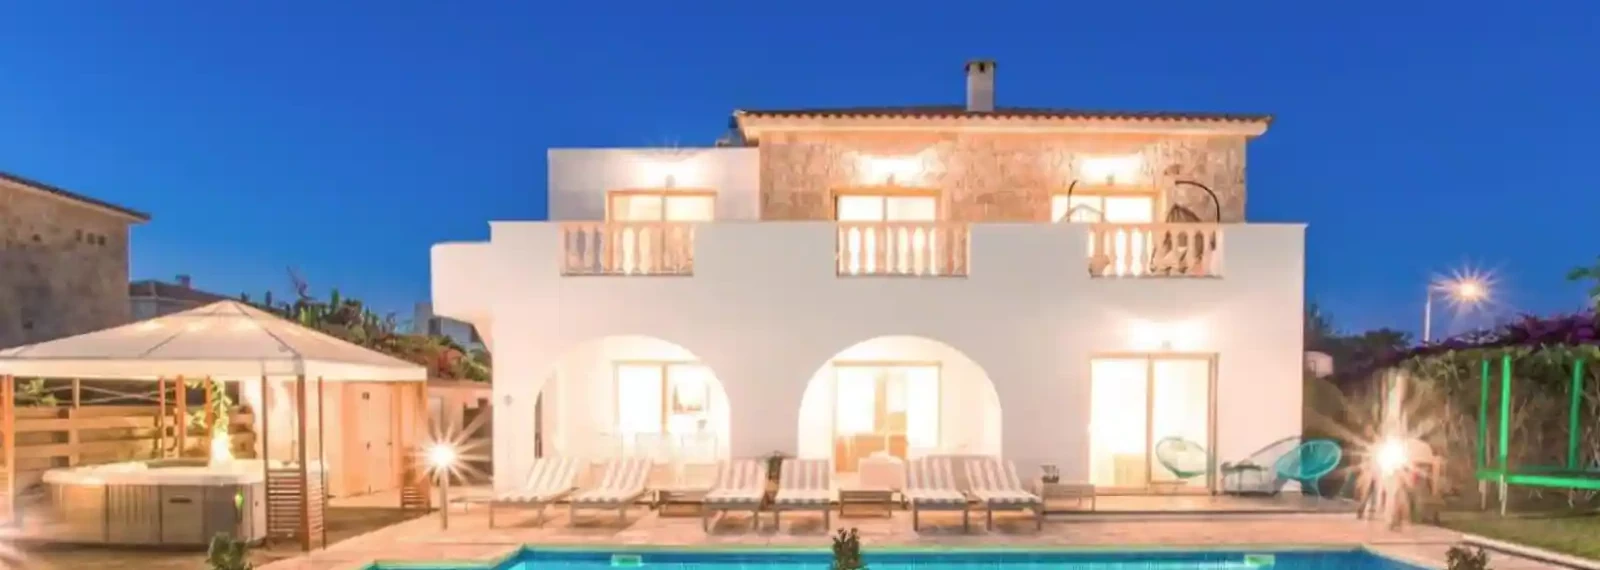 4-bedroom villa to rent €3.450, image 1